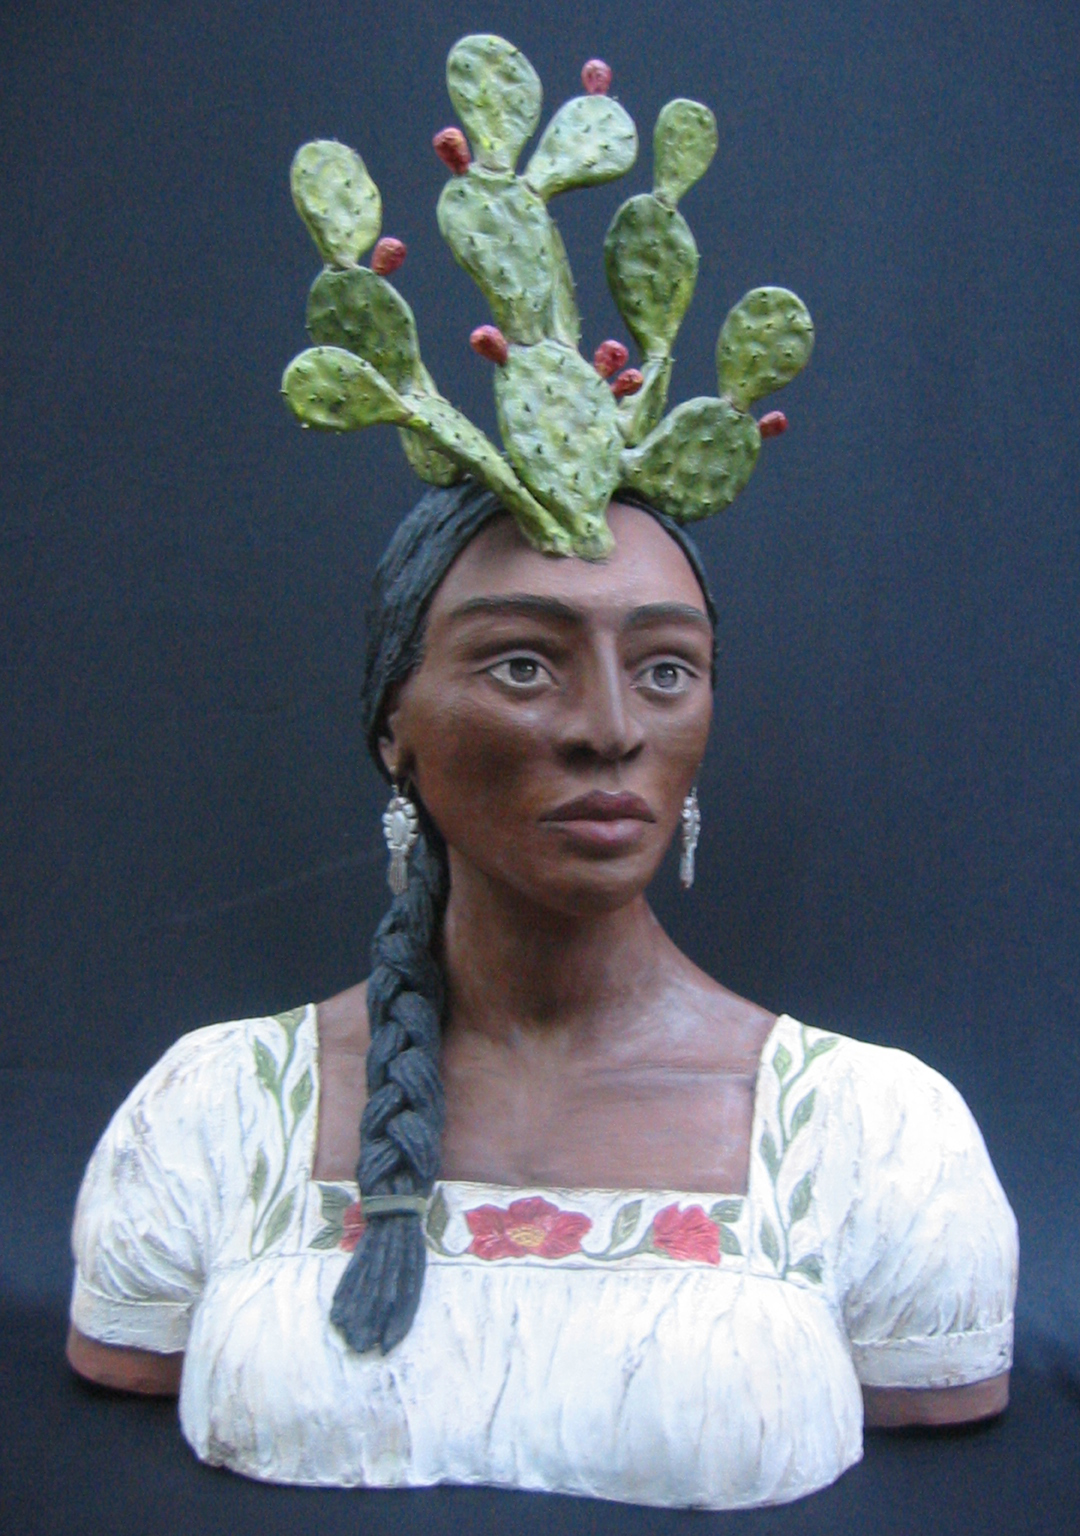 Con el Nopal en la Frente-Woman with Prickly Pear Cactus on Head Sculpture